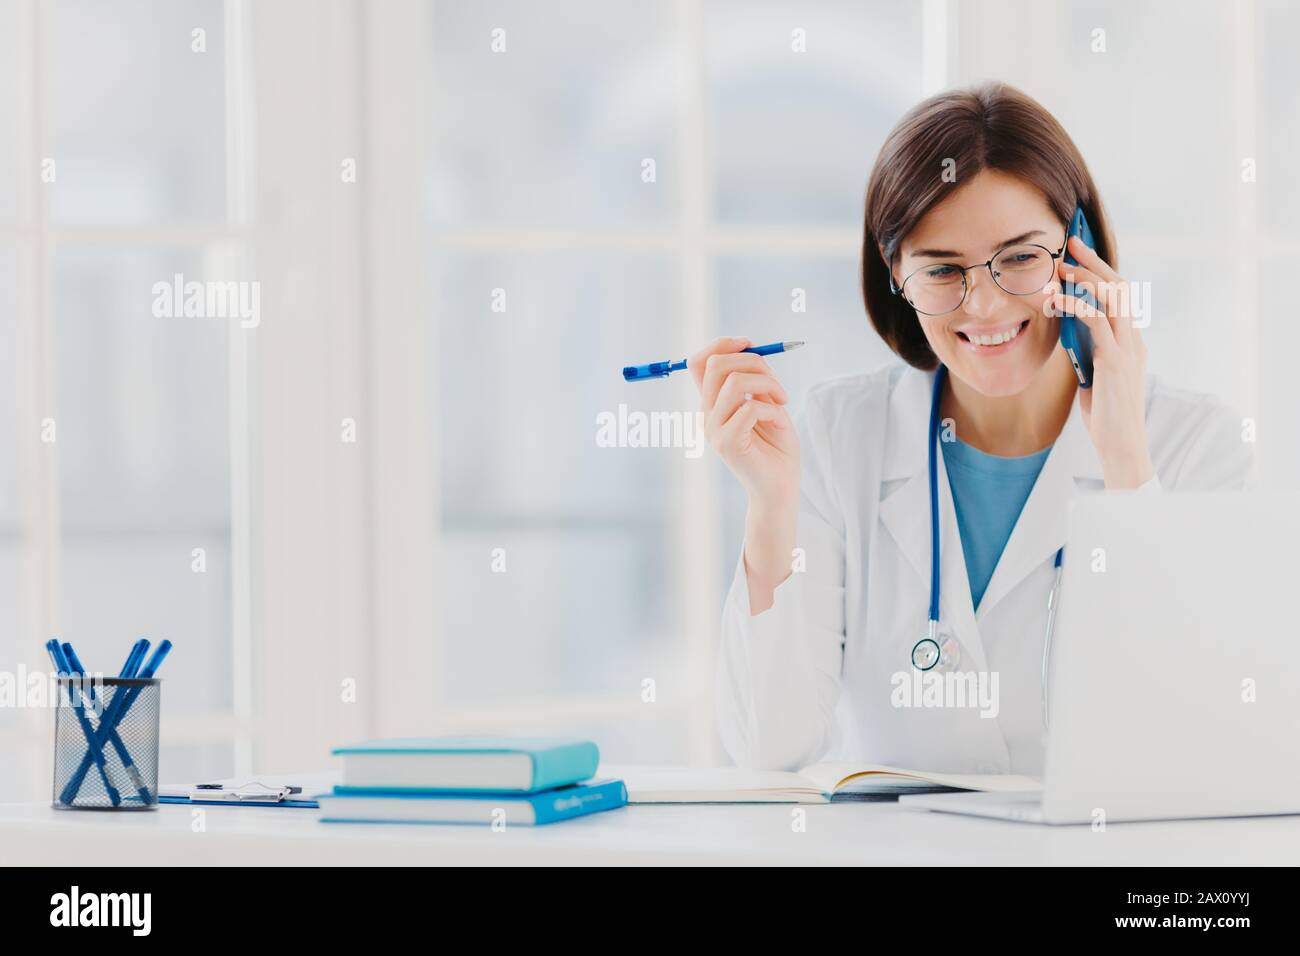 Der froh-professionelle Arzt, der sich auf den modernen Laptop konzentriert, nützliche Informationen liest, telefonische Gespräche führt, medizinische Probleme diskutiert, sitzt Stockfoto